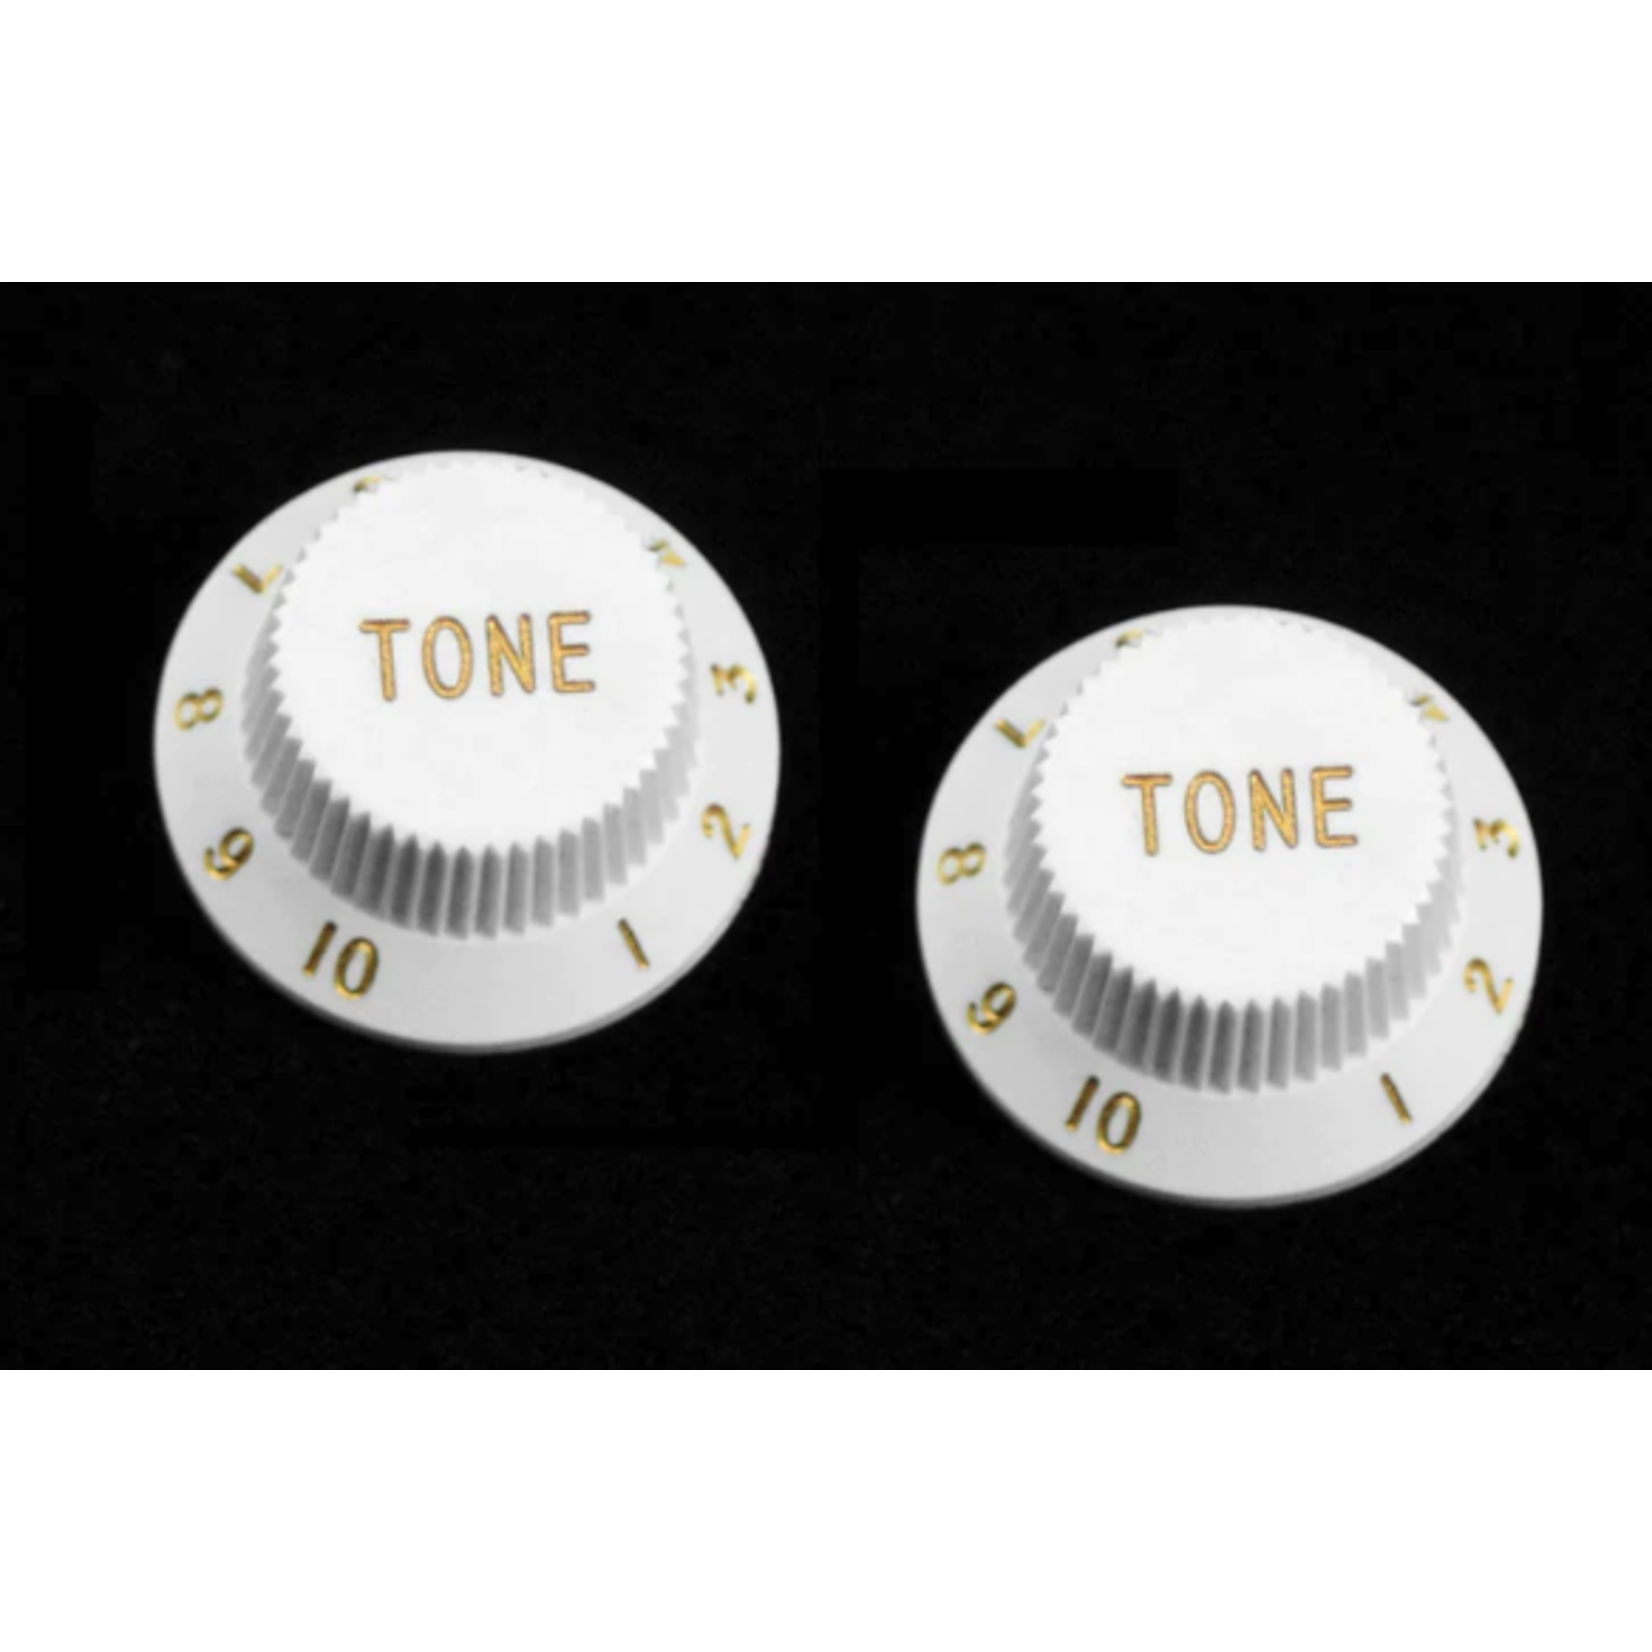 All Parts PK-0153-025 White Tone Knobs